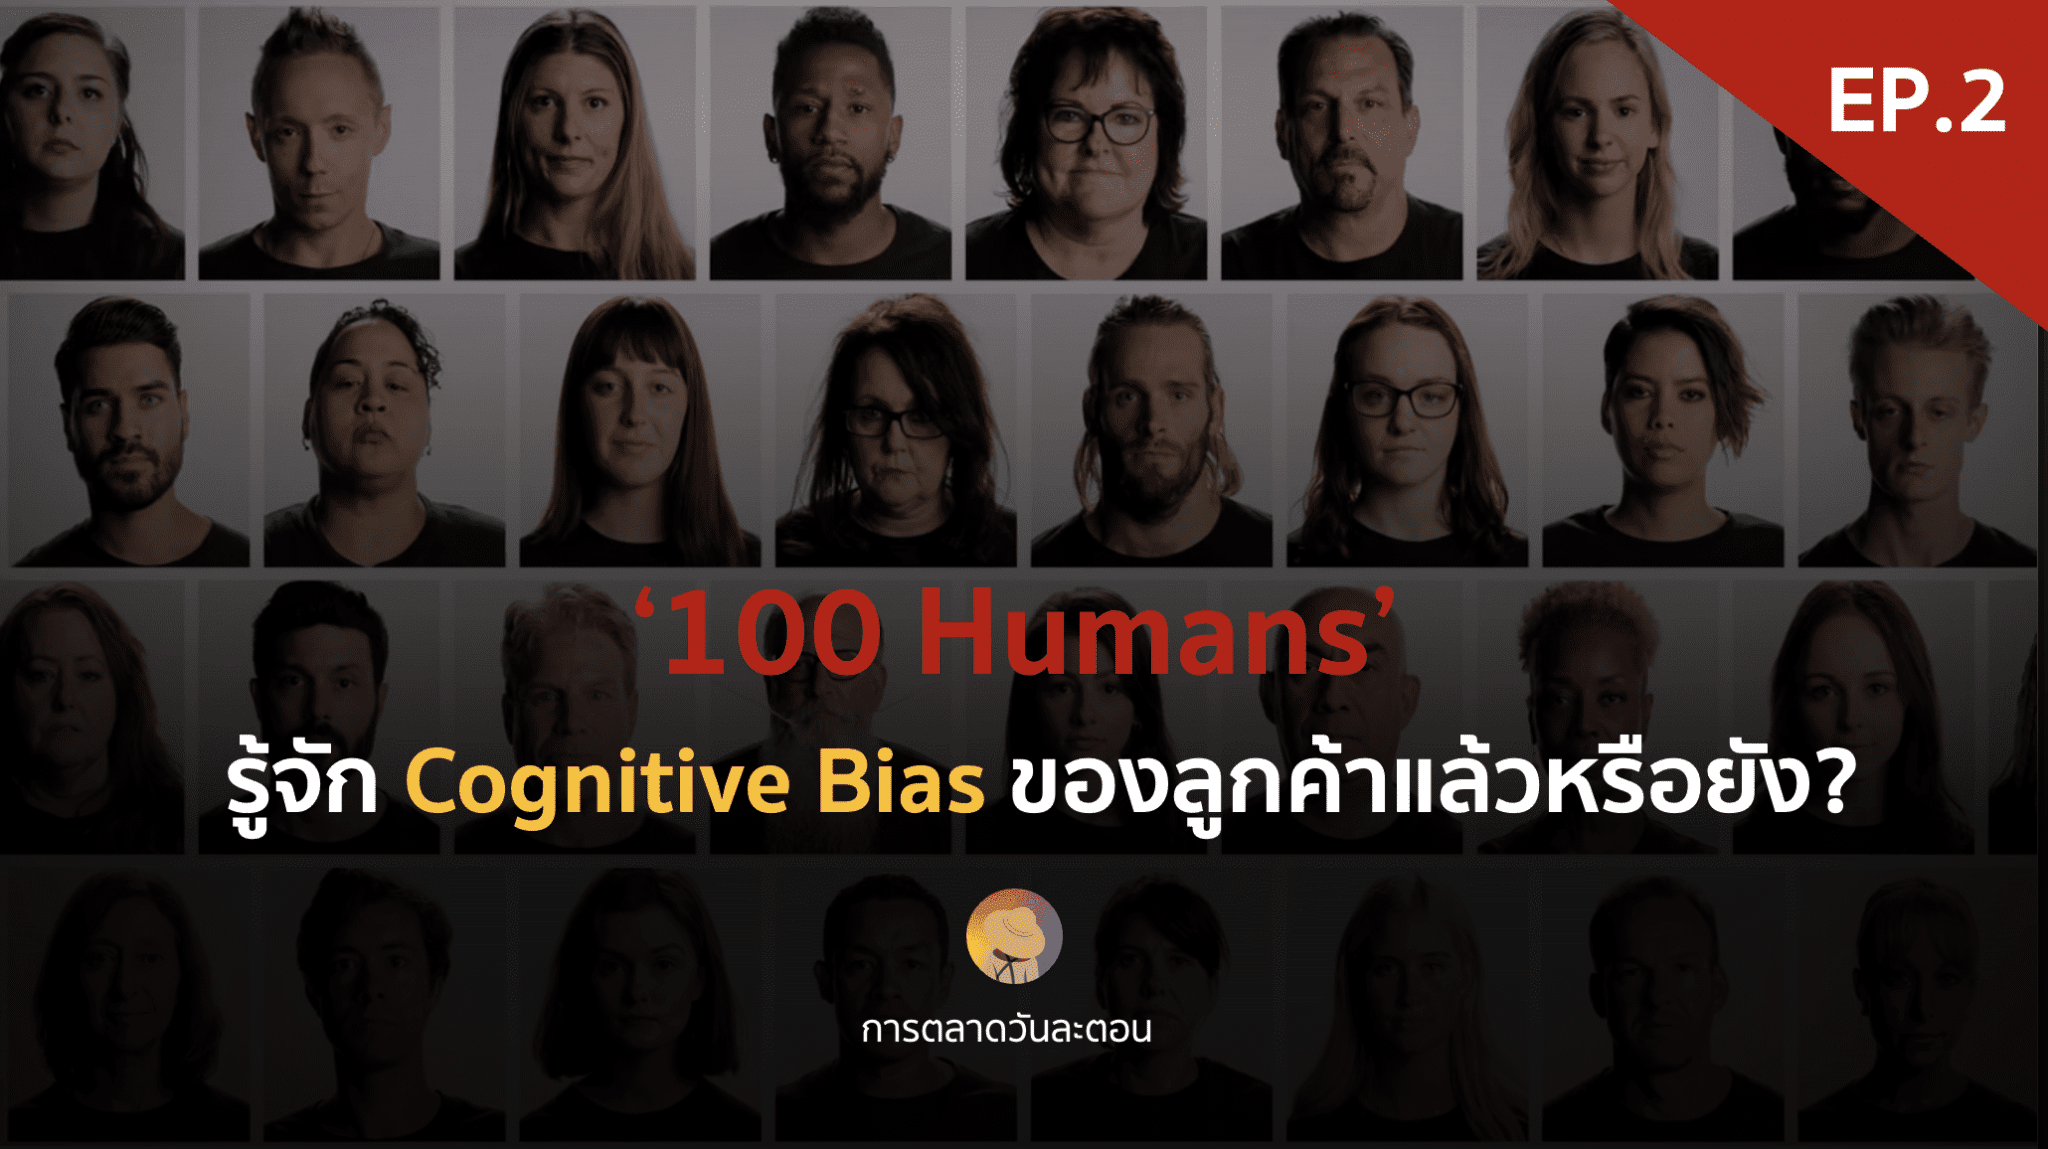 รู้จัก Cognitive Bias ของลูกค้าแล้วหรือยัง?  ‘100 Humans’ – EP.4